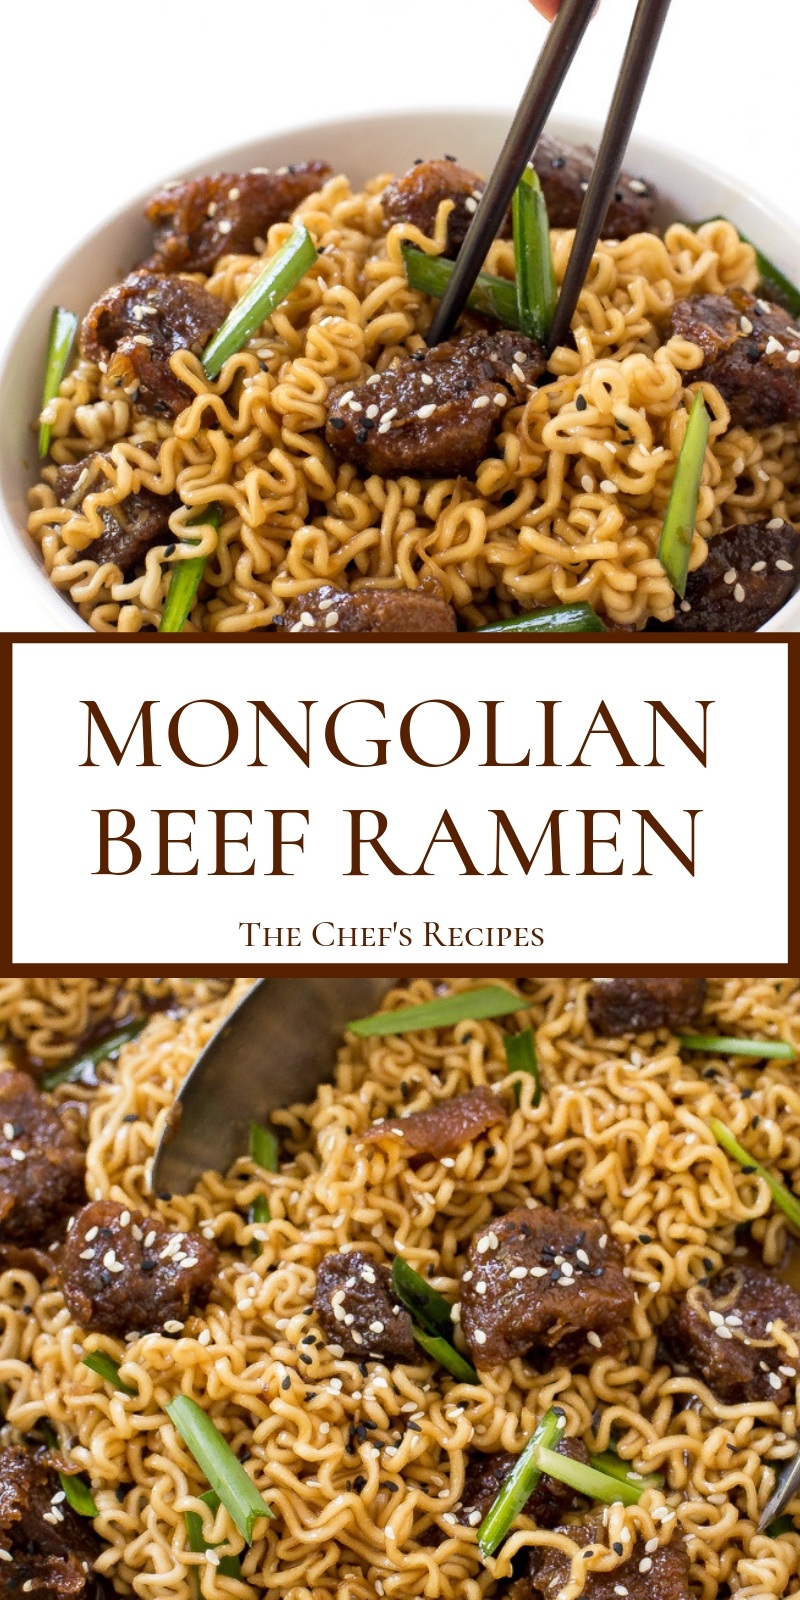 MONGOLIAN BEEF RAMEN